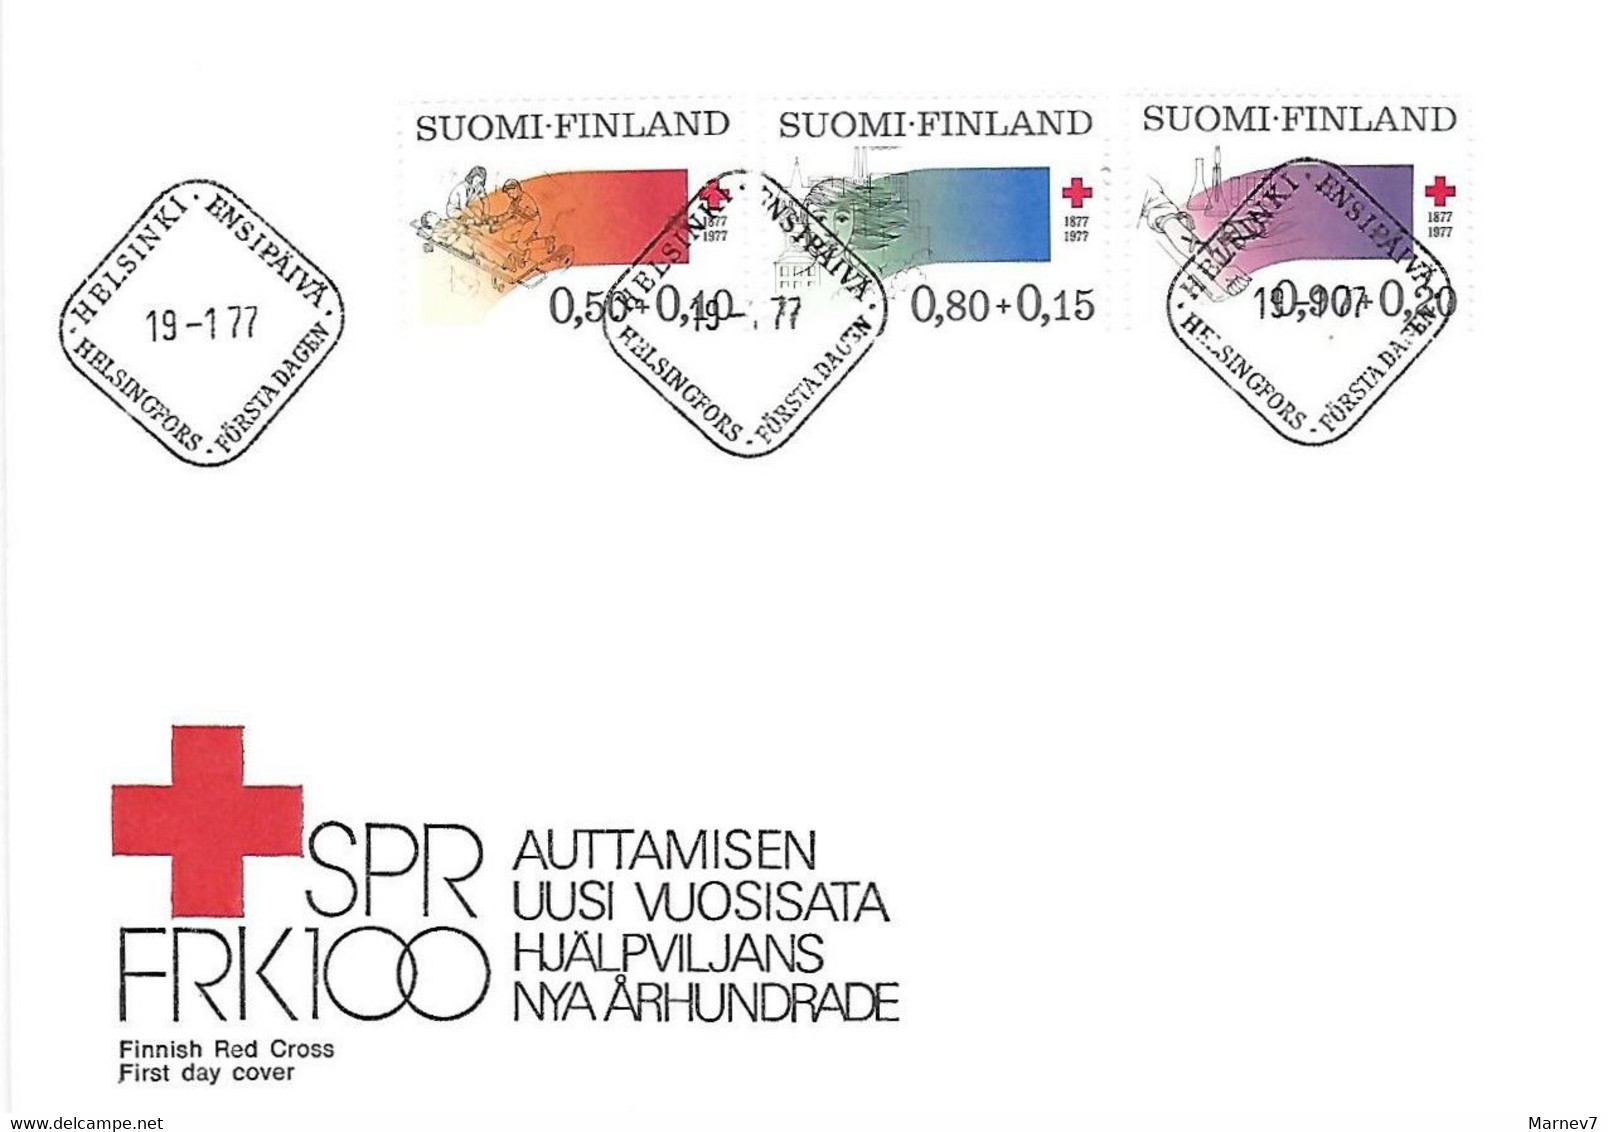 Finlande Suomi N° 763/765 - Enveloppe 1er Jour Don Du Sang Centenaire Croix Rouge - Cad Helsinki 19 1 77 - Année 1977 - Covers & Documents